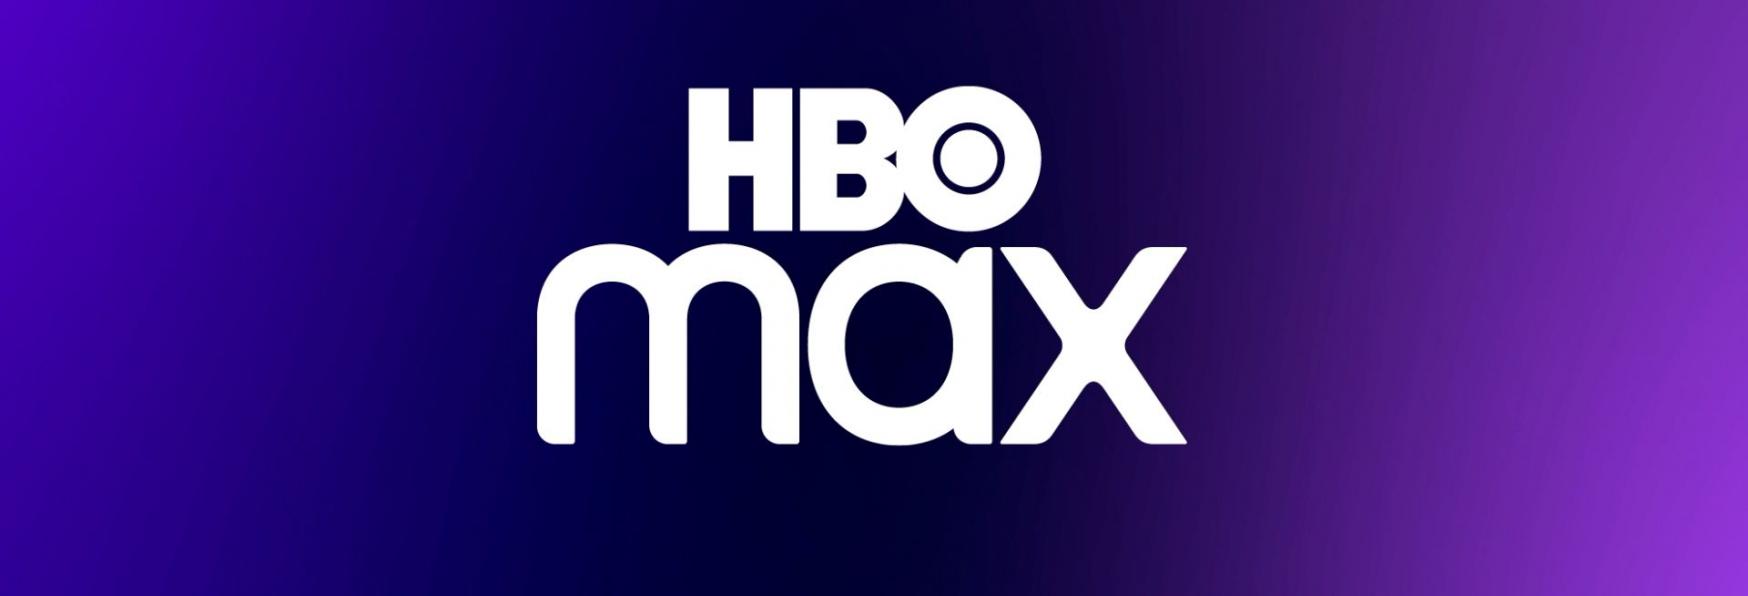 HBO Max ordina una Nuova Serie TV di J. J. Abrams con Josh Holloway (Lost)